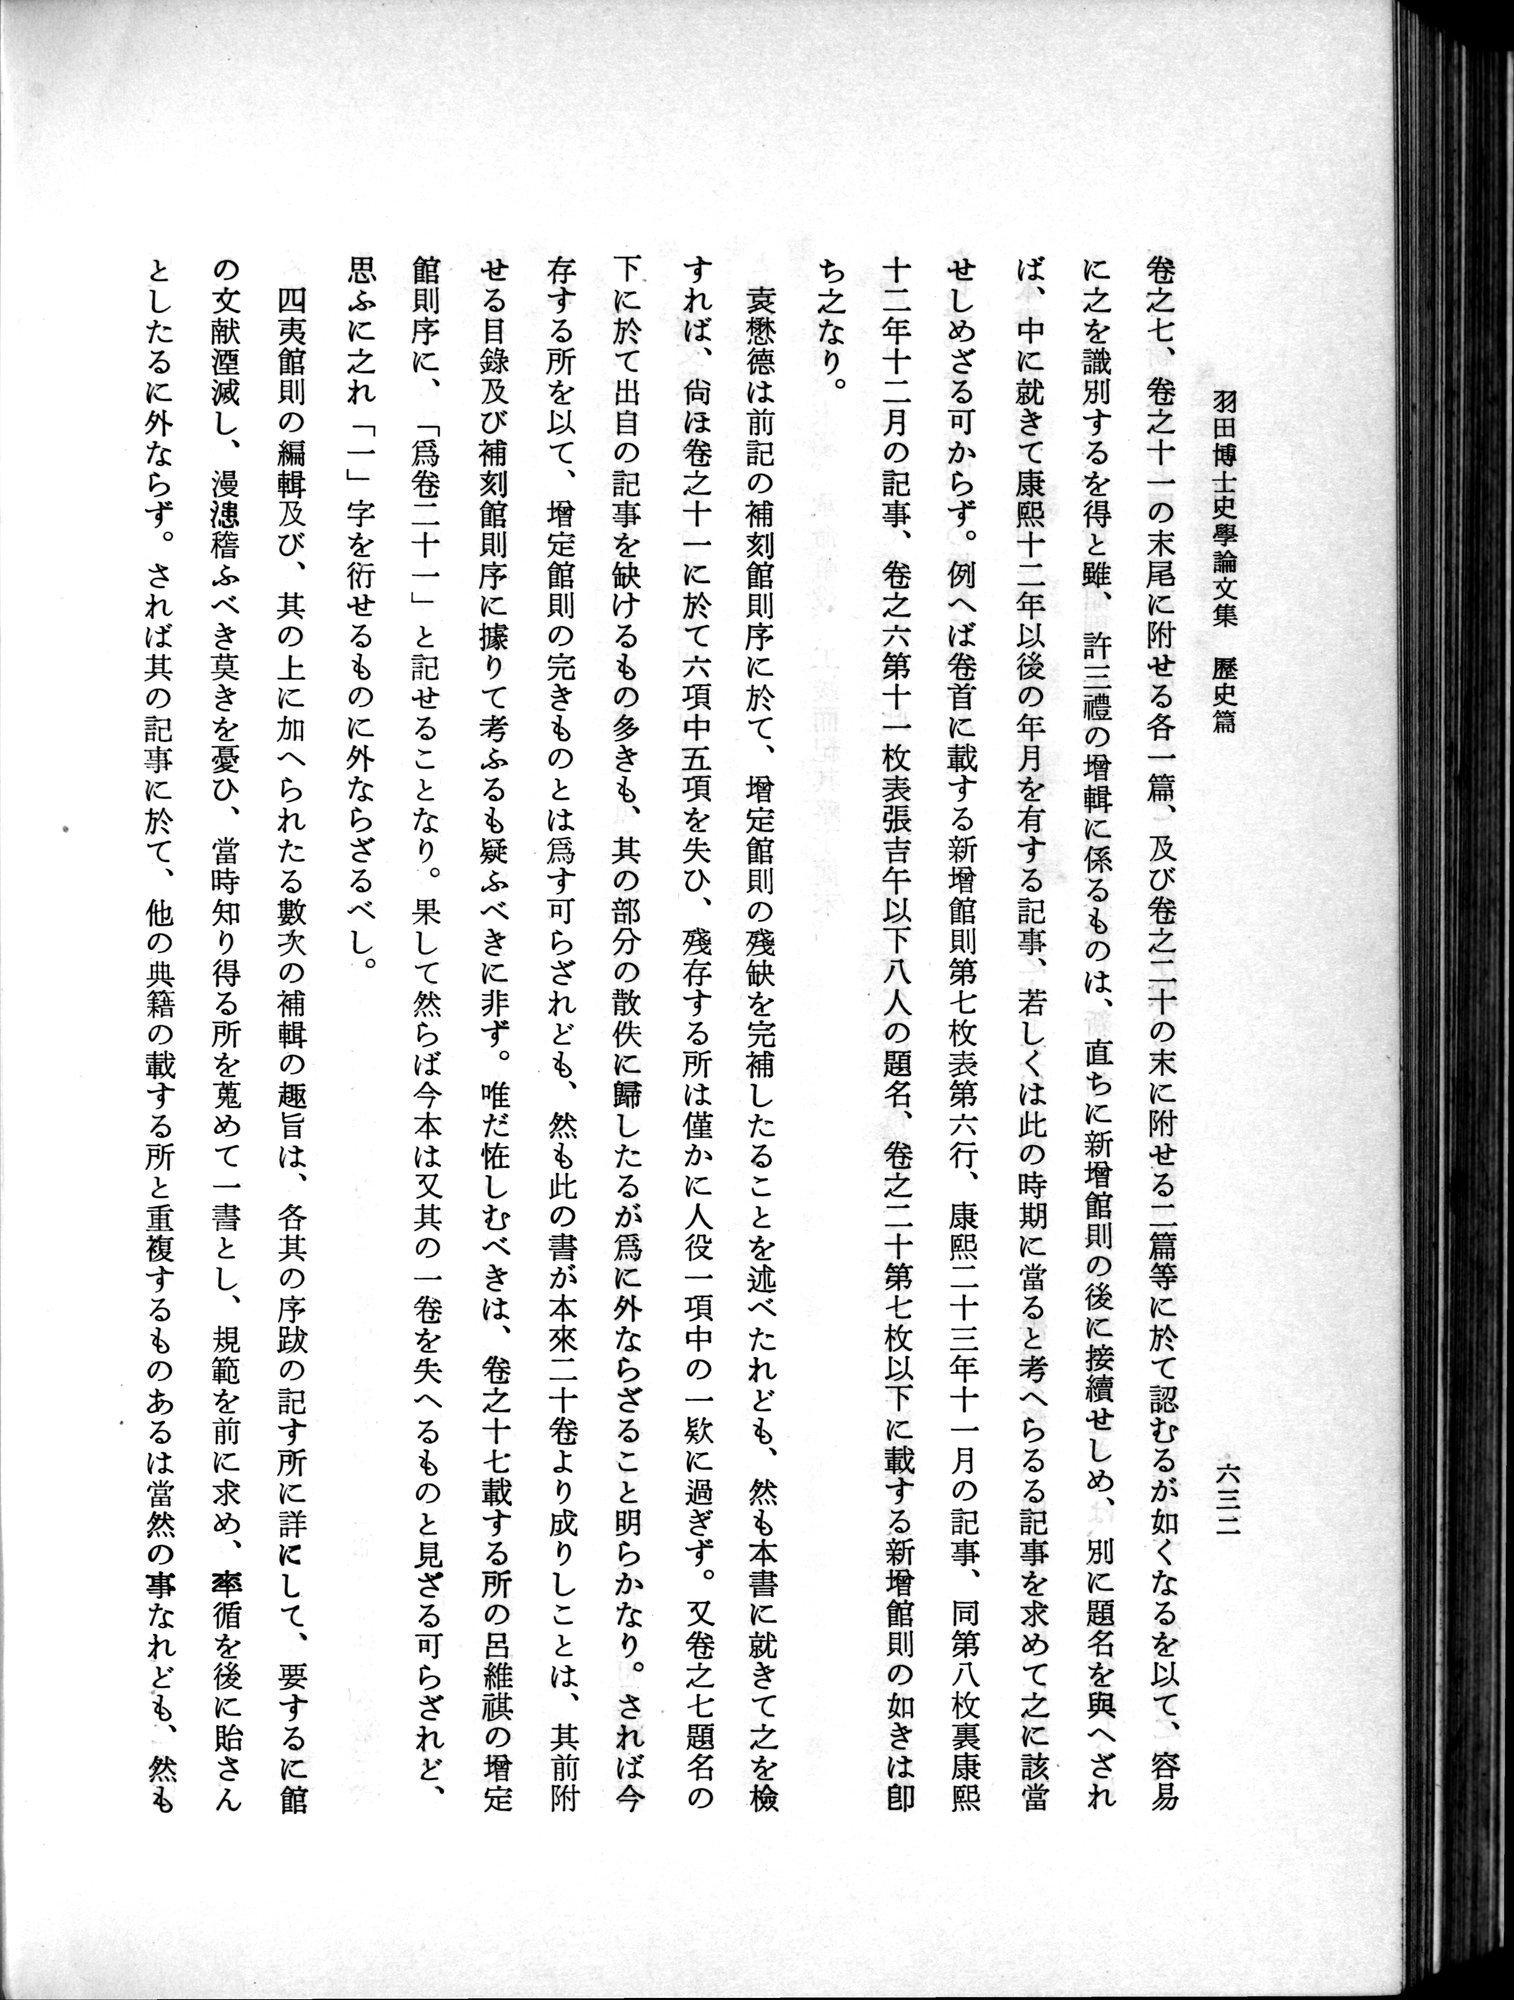 羽田博士史学論文集 : vol.1 / Page 670 (Grayscale High Resolution Image)